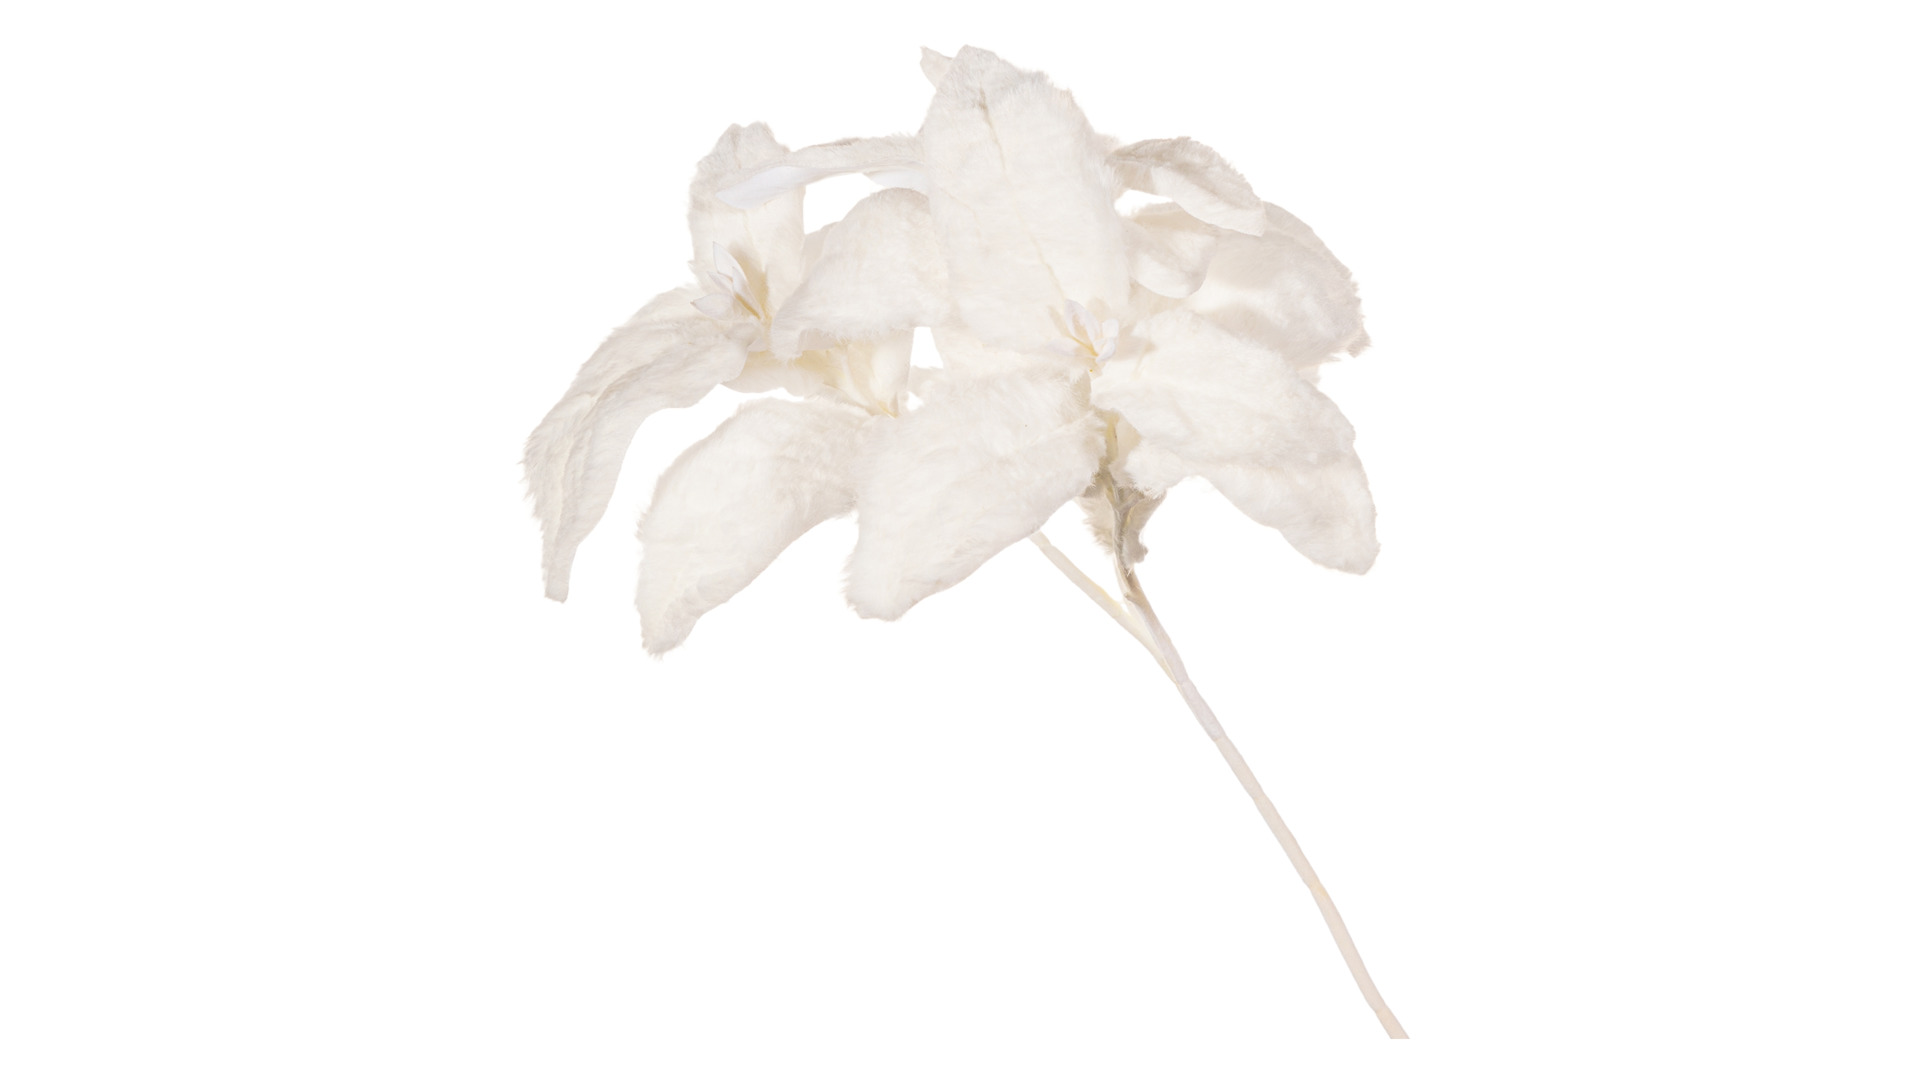 Украшение декоративное Goodwill Пуансеттия 66 см, меховые листья, белое